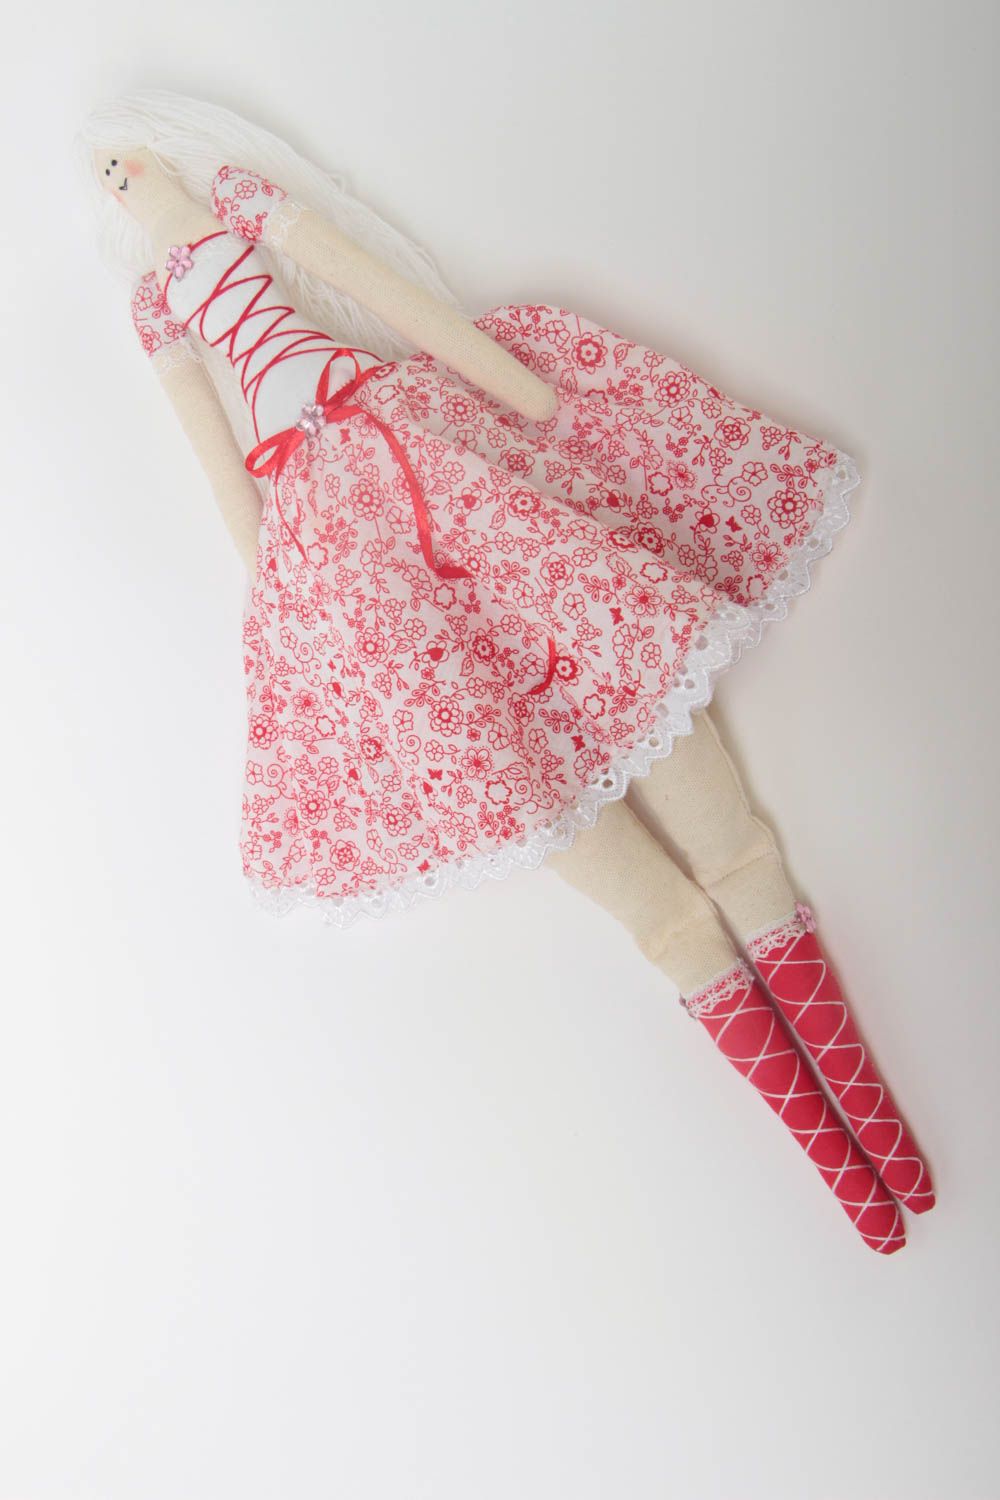 Designer Puppe aus Stoff originell in Weiß Rot für Interieur Dekoration handmade foto 2